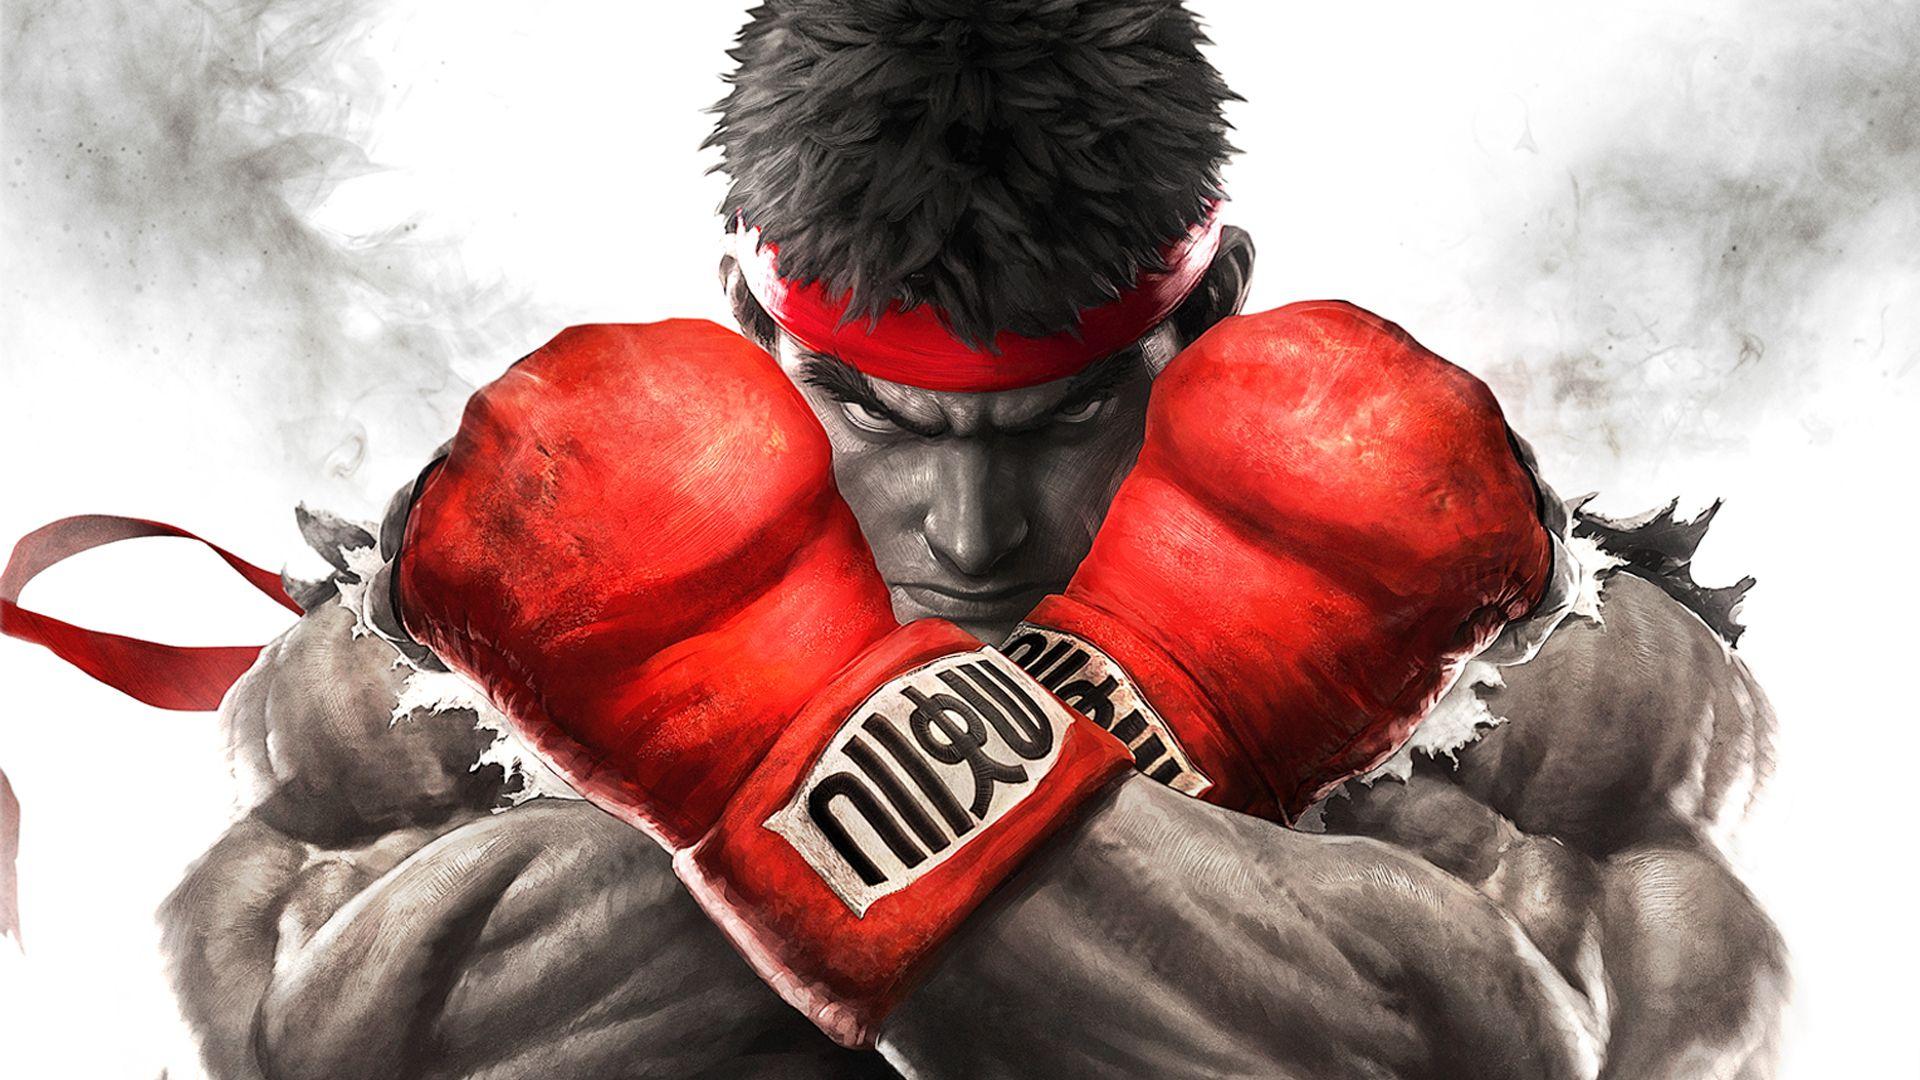 Street Fighter Ryu Wallpaper Widescreen Gamers Wallpaper 1080p